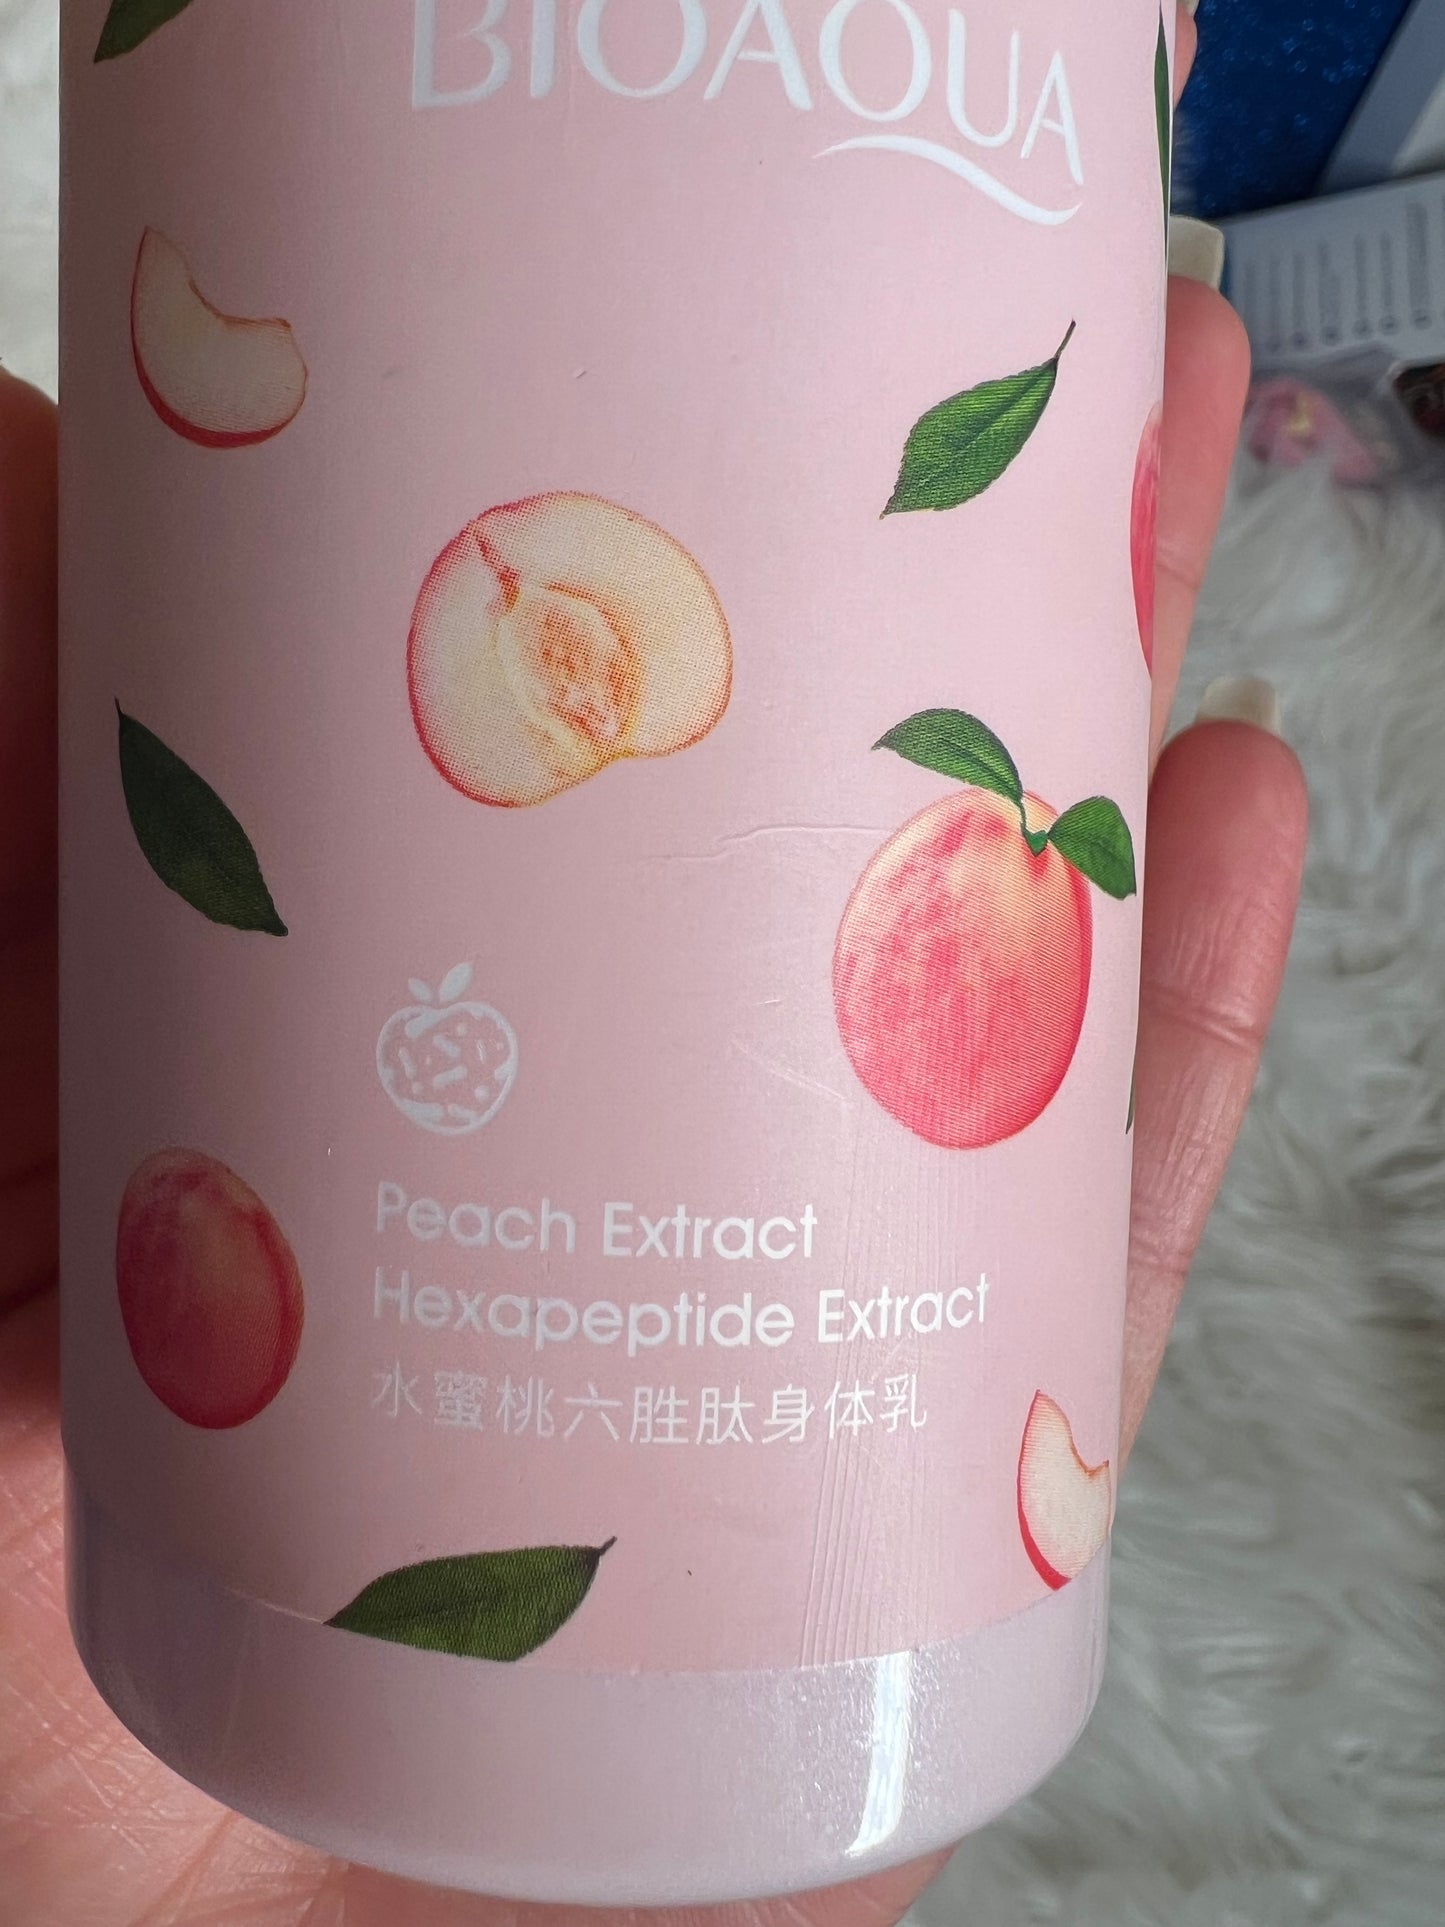 Bioaoua peach lotion